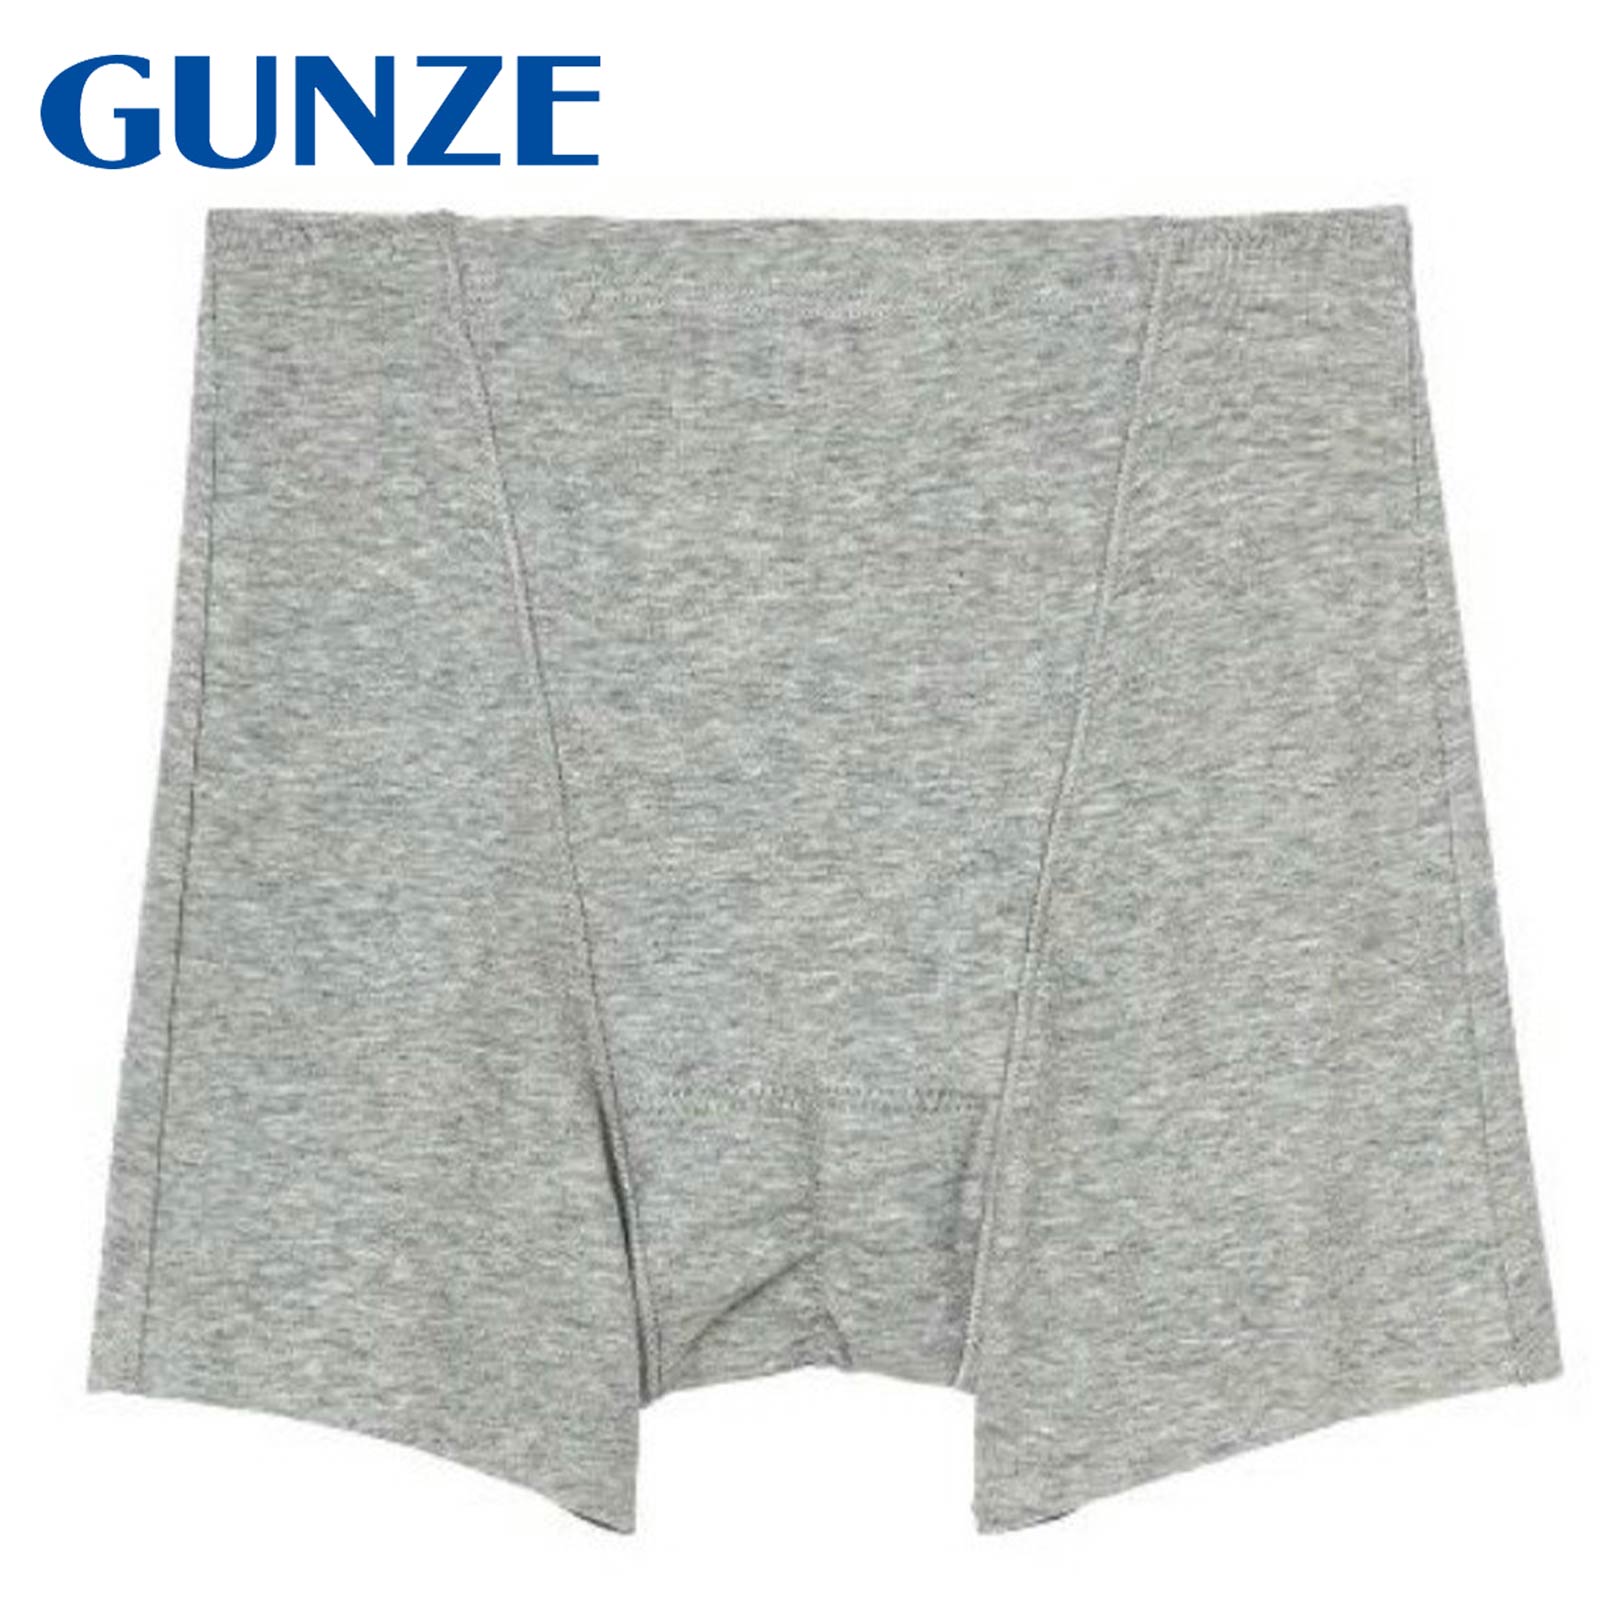 【GUNZE】グンゼ サニタリーショーツ  (ひびきにくい、綿85%のサニタリー)(レディース)(M,L)[HV0662]